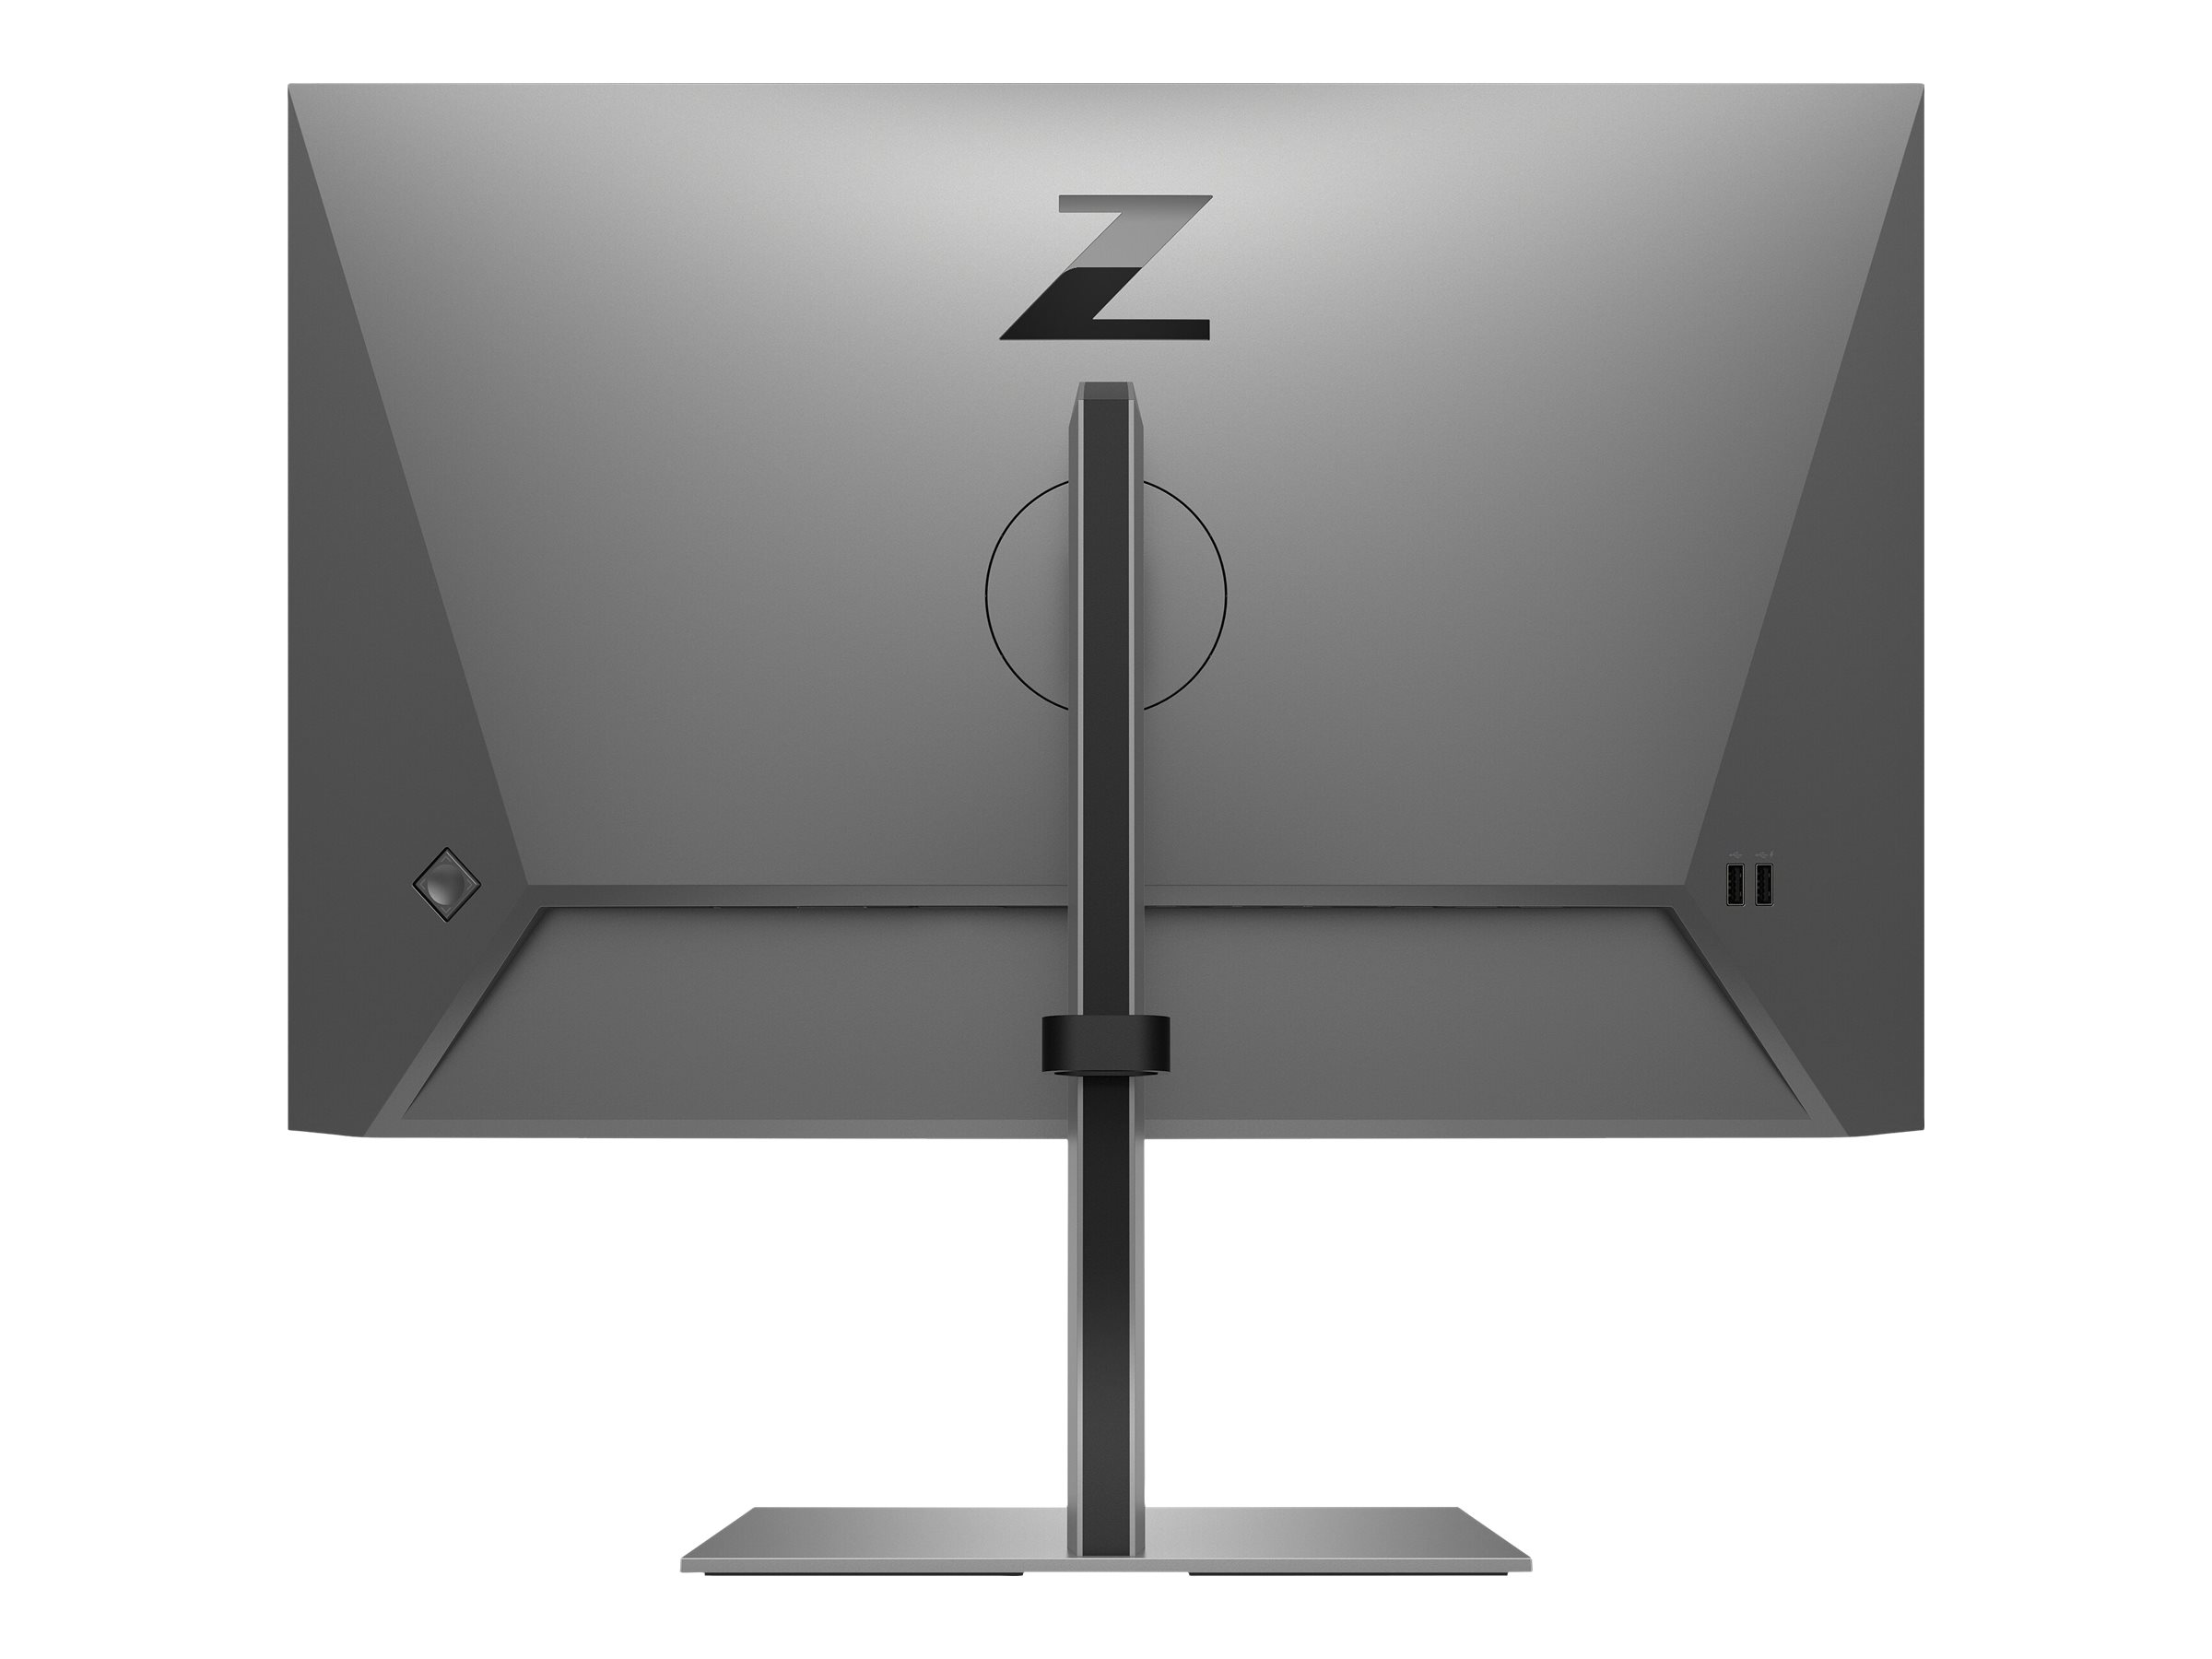 HP Z24n G3 - LED-Monitor - 61 cm (24") - 1920 x 1200 WUXGA @ 60 Hz